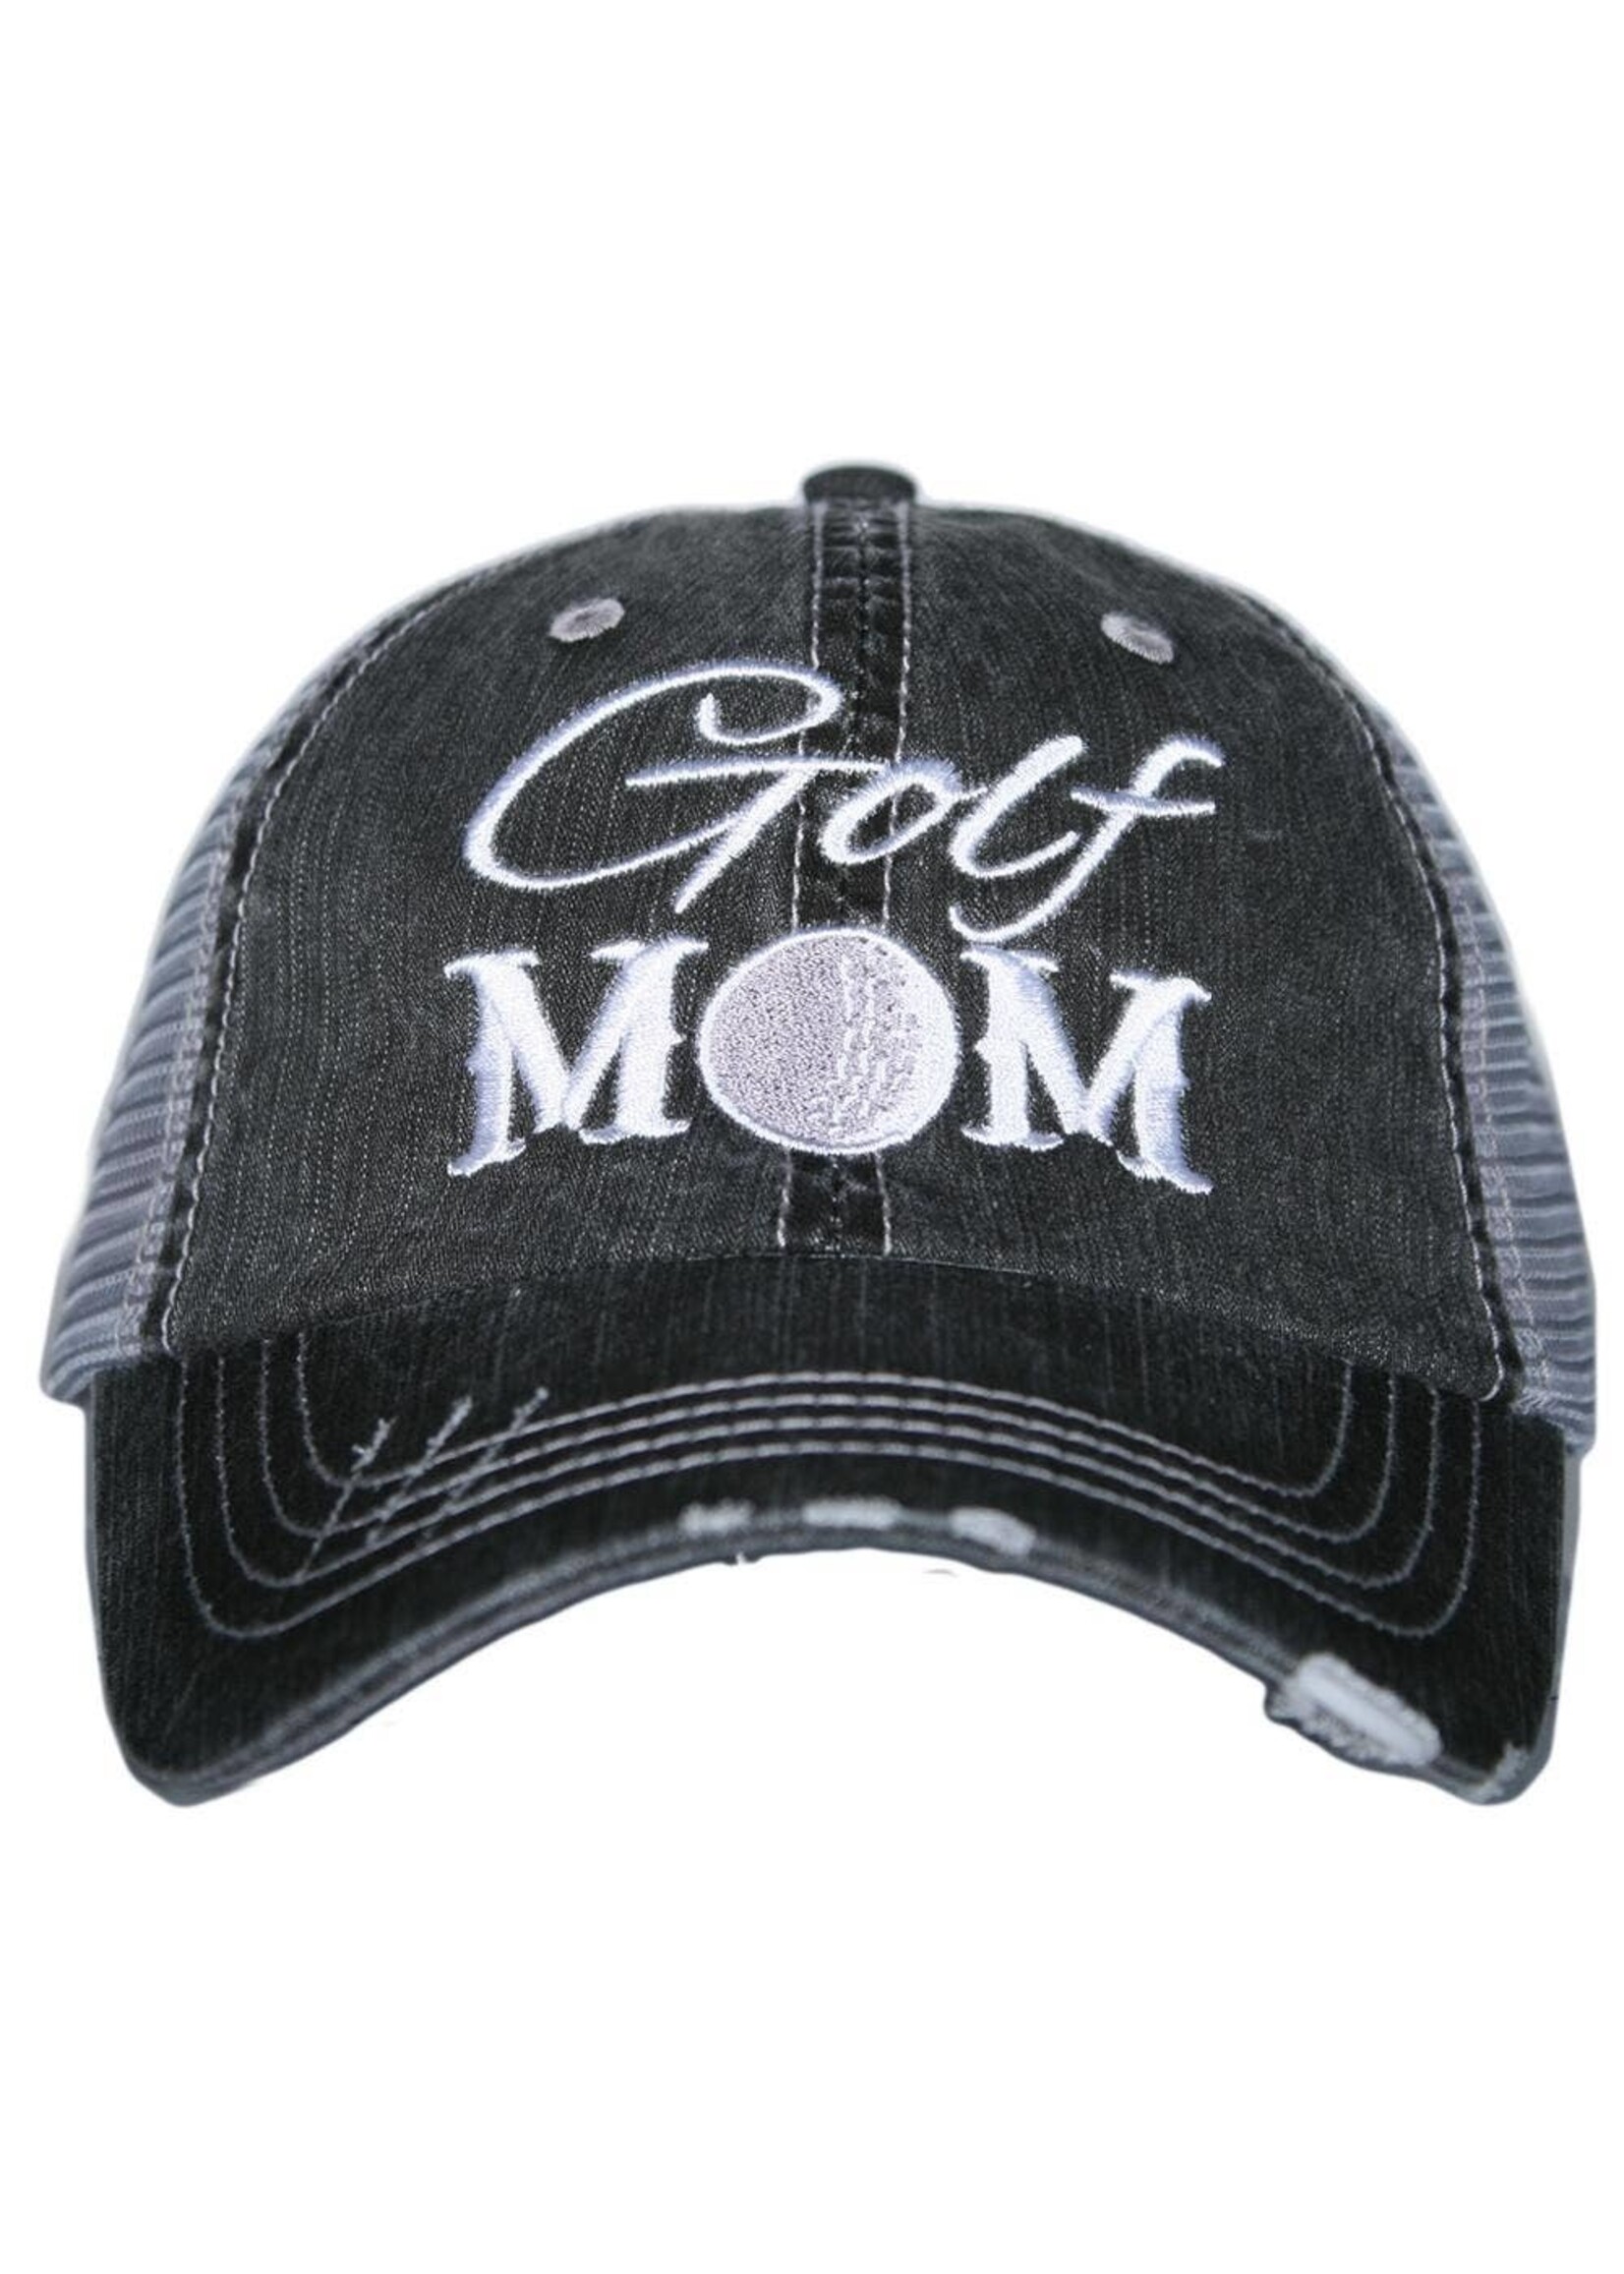 Katydid Golf Mom Trucker Hat